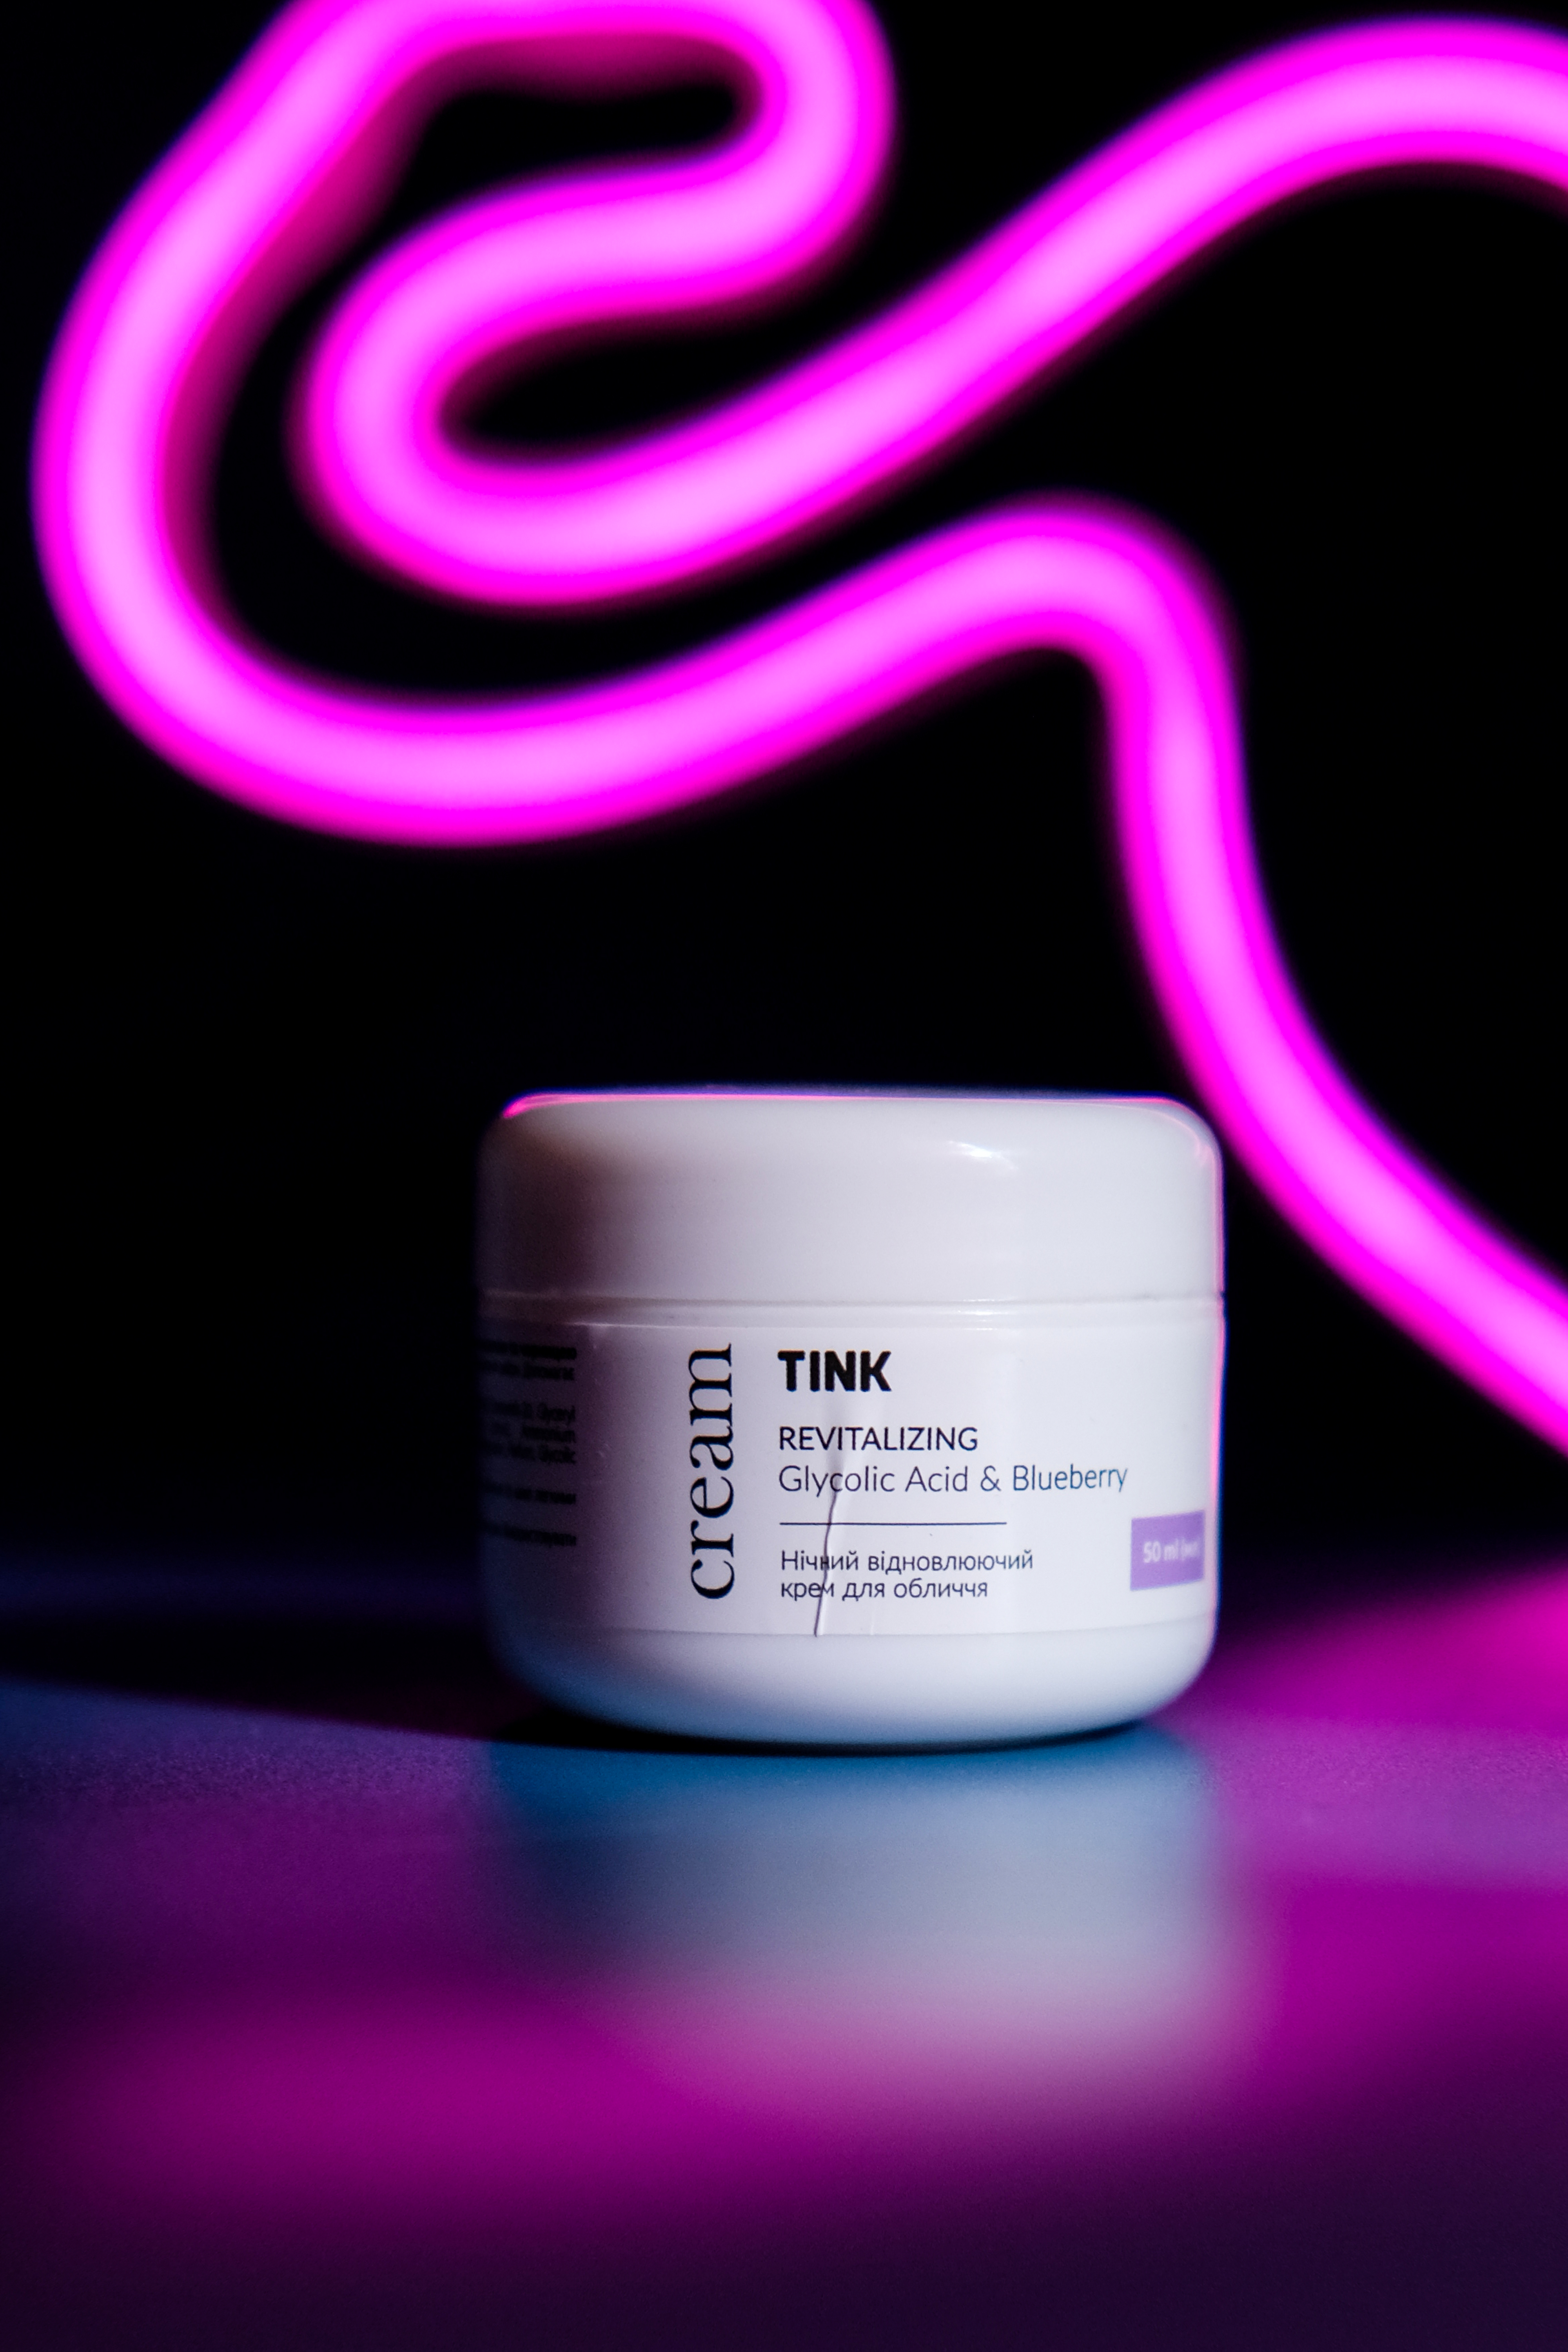 Tink Revitalizing Glycolic Acid & Blueberry Cream